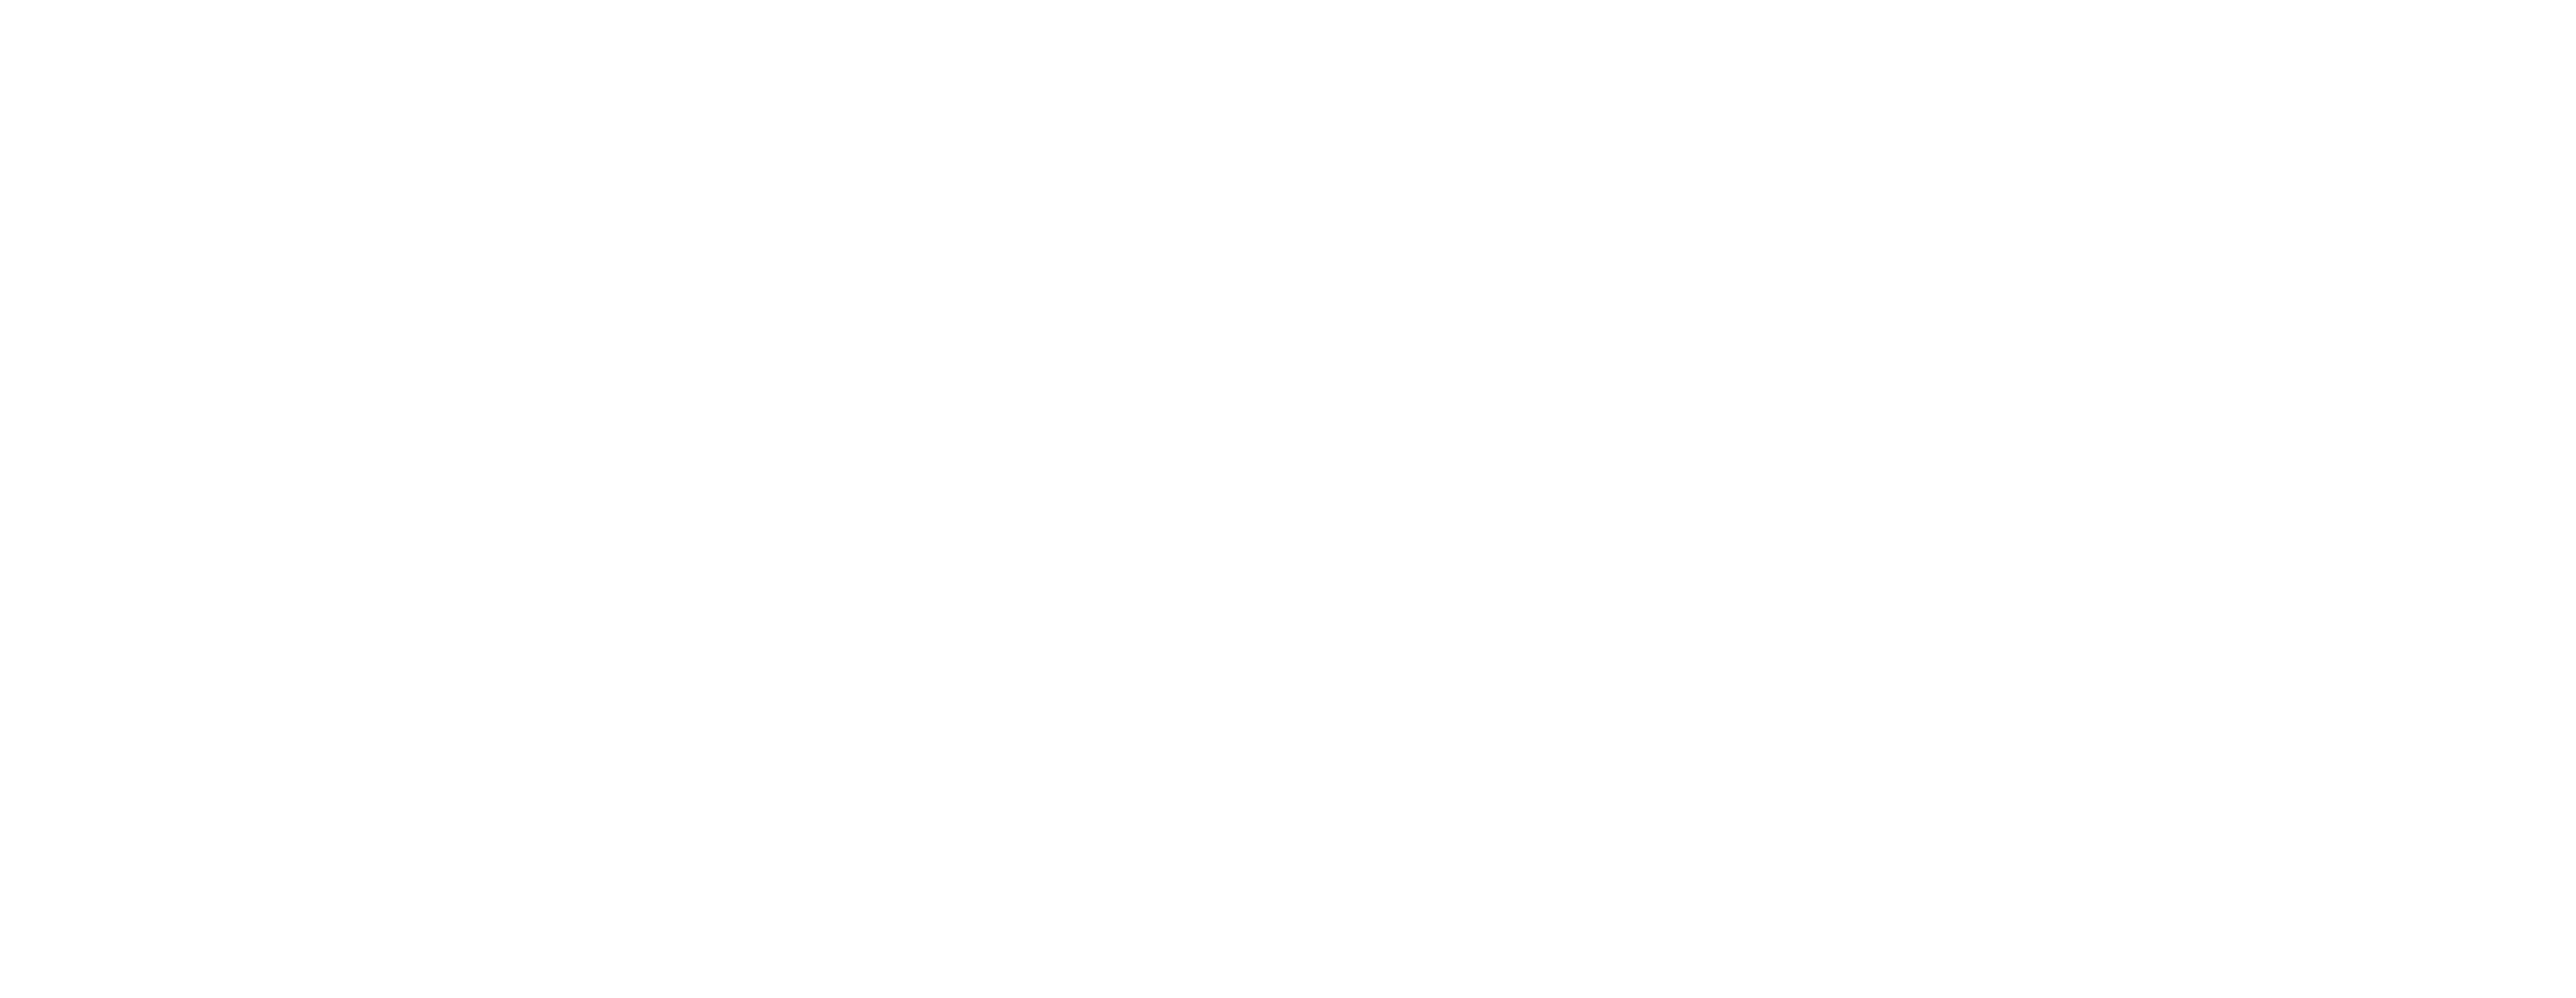 jesusnet-logo_Tekengebied 04